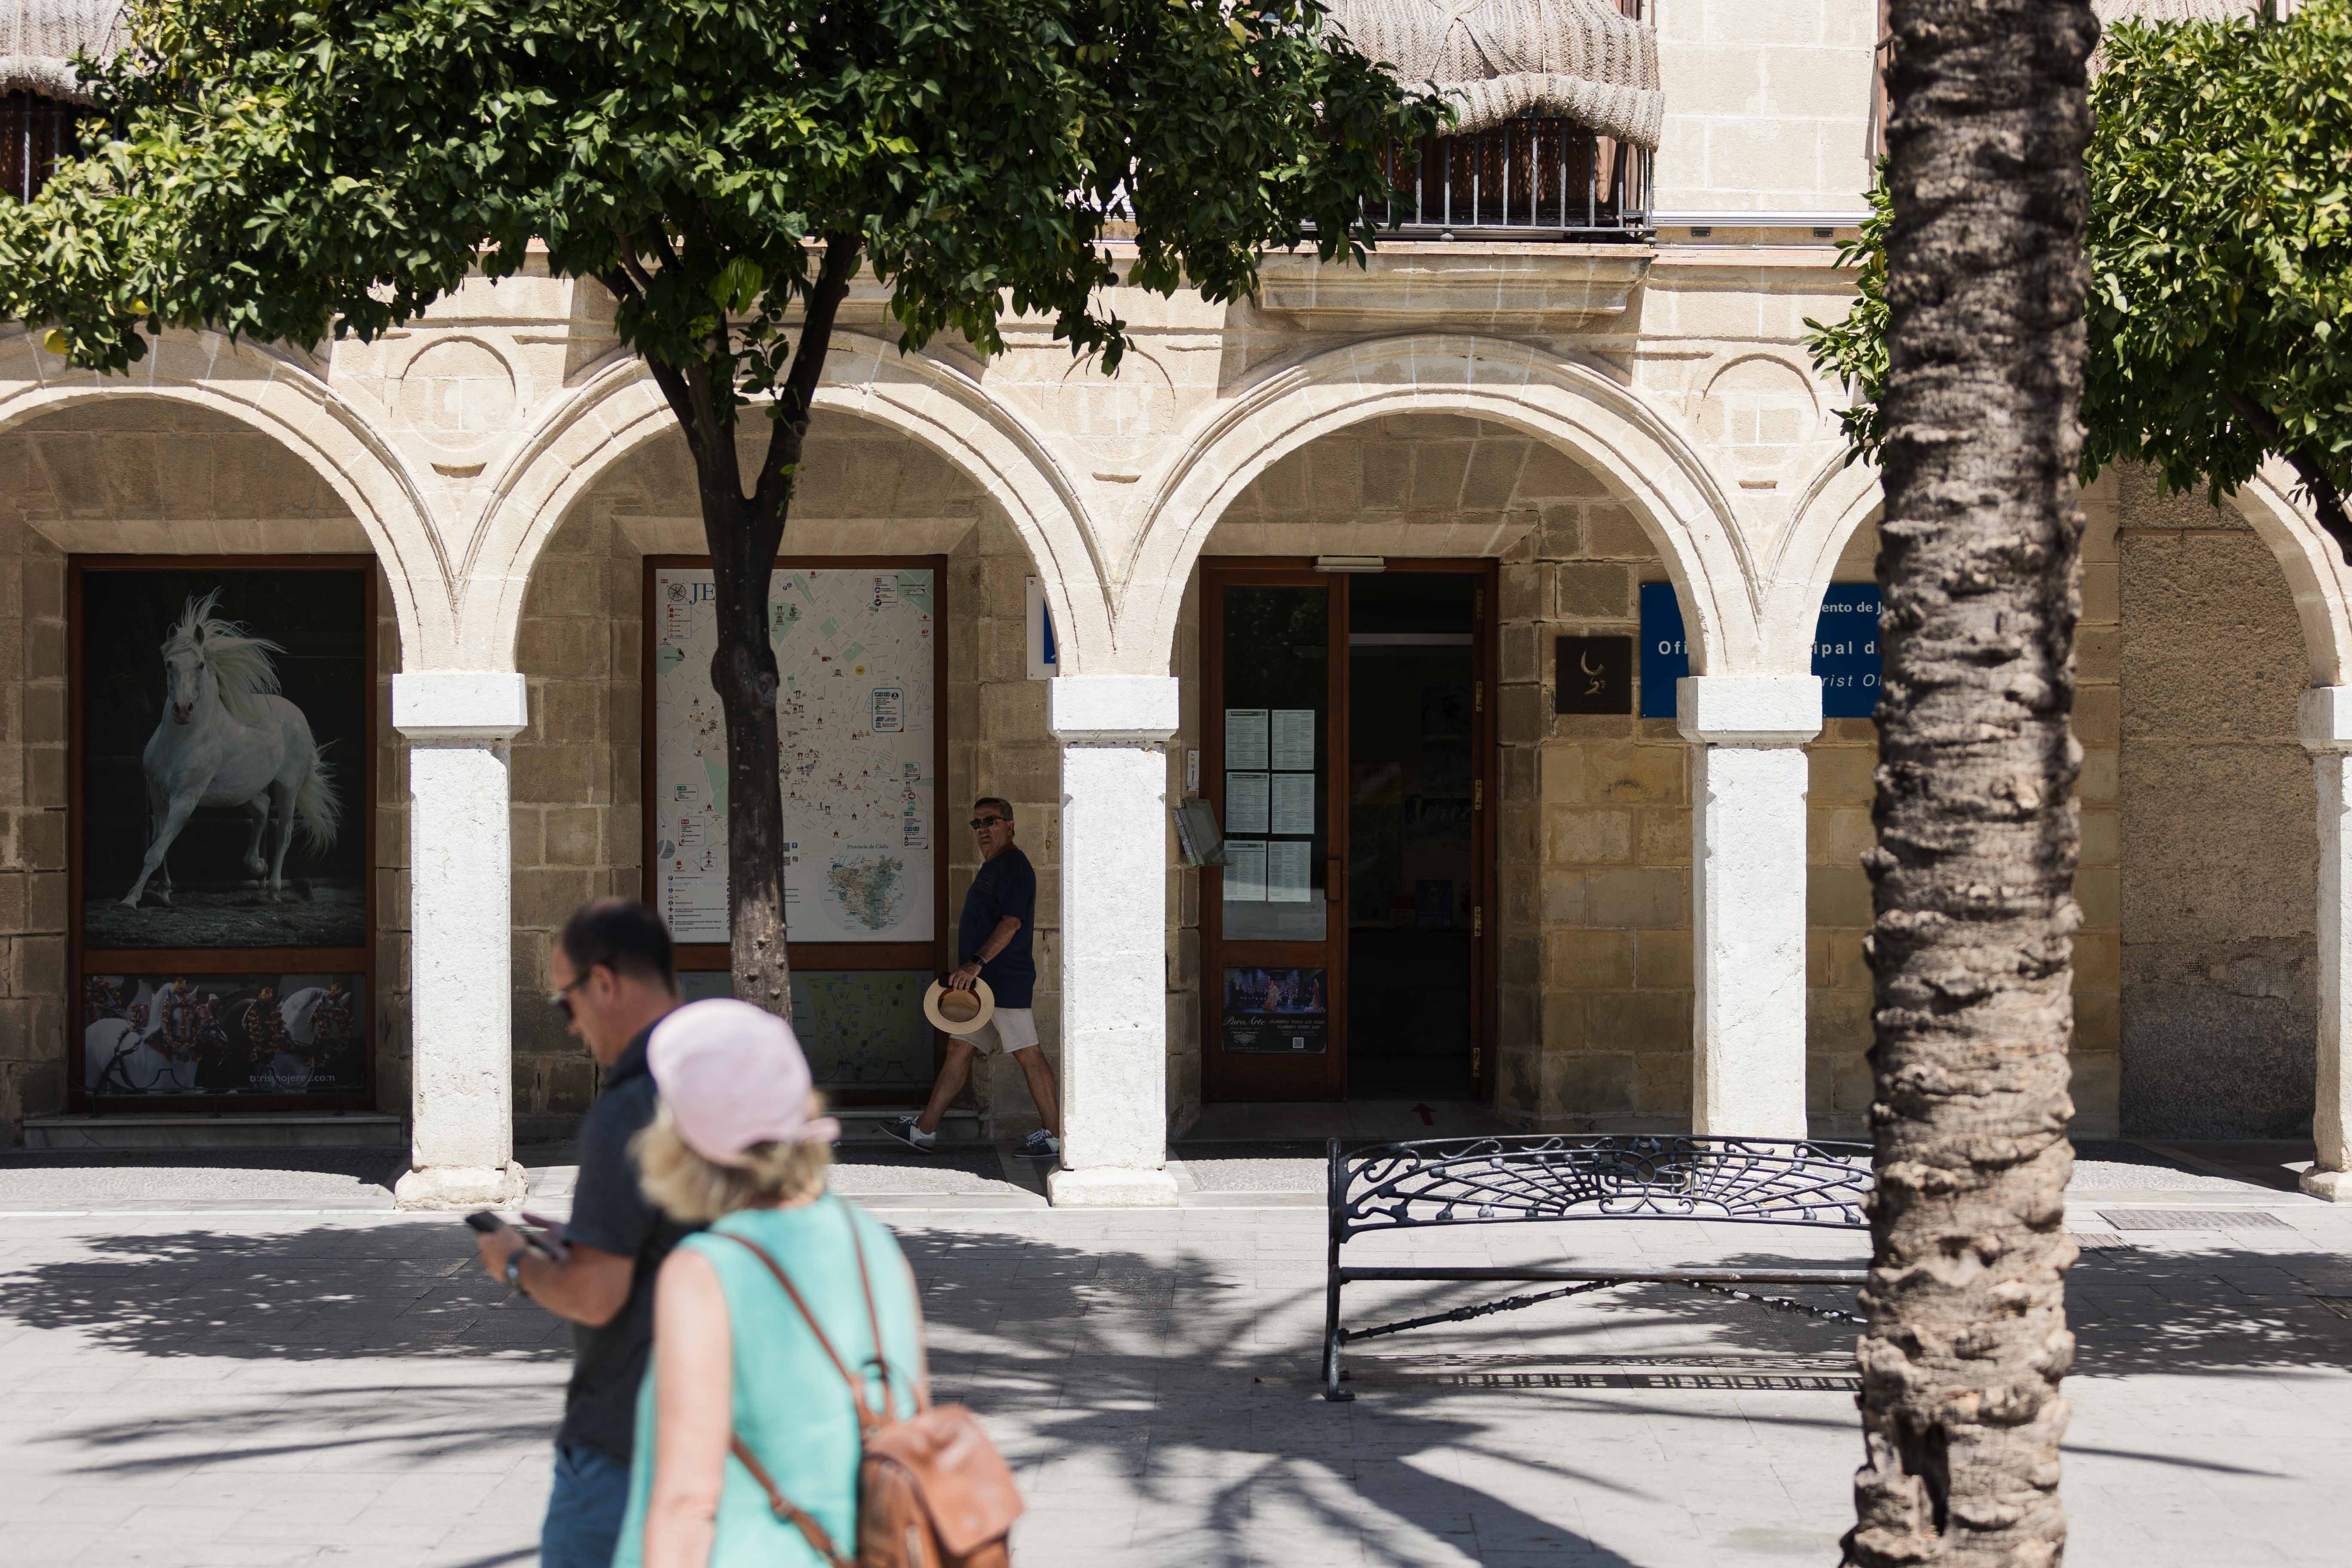 La oficina de turismo de Jerez bajo el soportal del edificio de Urbanismo.